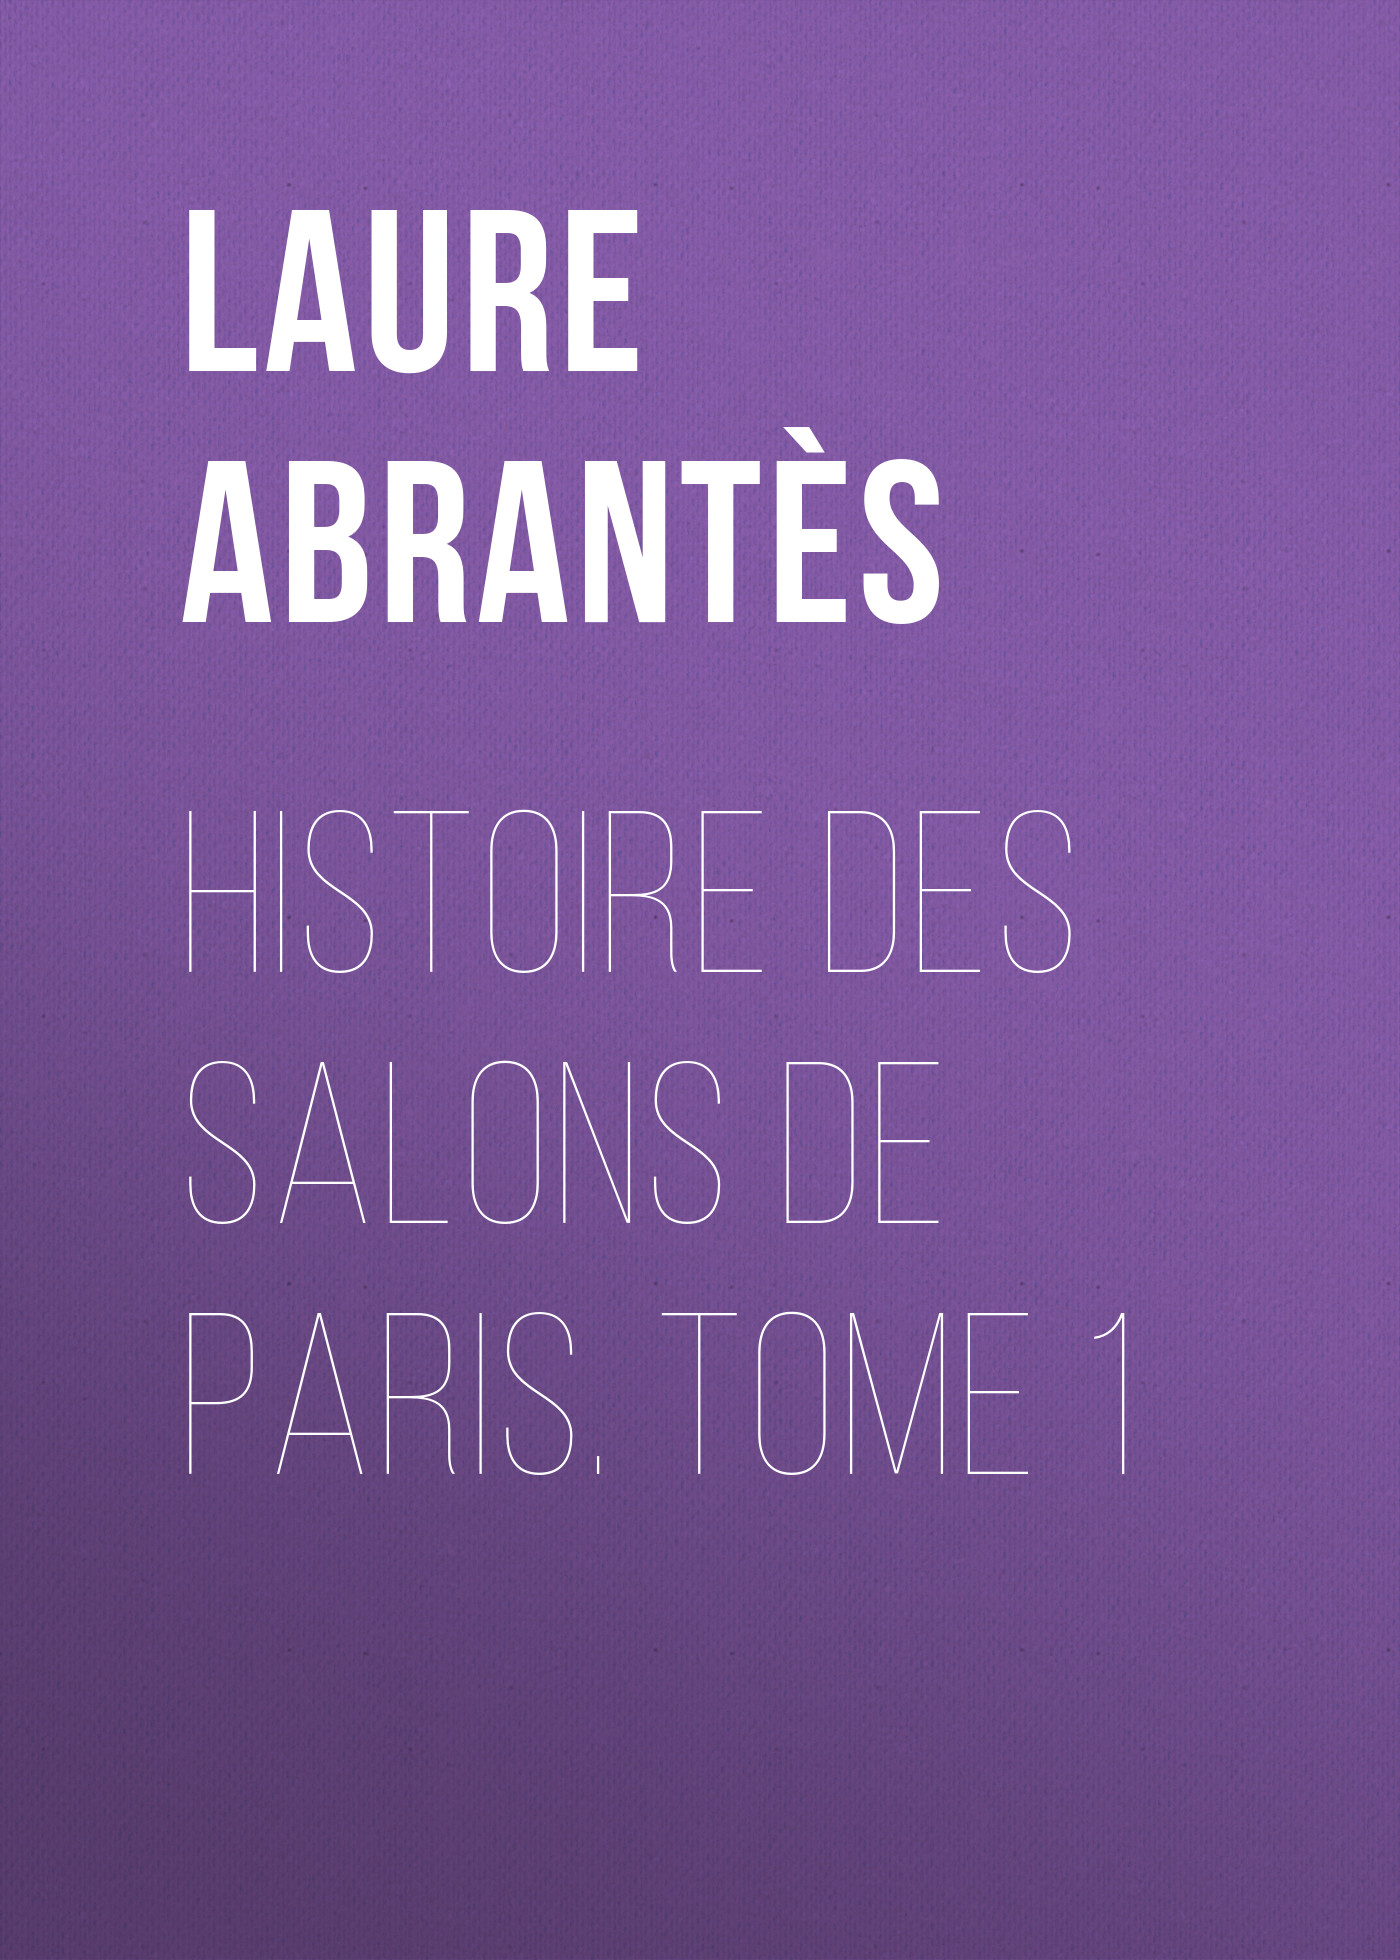 Книга Histoire des salons de Paris. Tome 1 из серии , созданная Laure Abrantès, может относится к жанру Зарубежная старинная литература, Зарубежная классика. Стоимость электронной книги Histoire des salons de Paris. Tome 1 с идентификатором 24166116 составляет 5.99 руб.